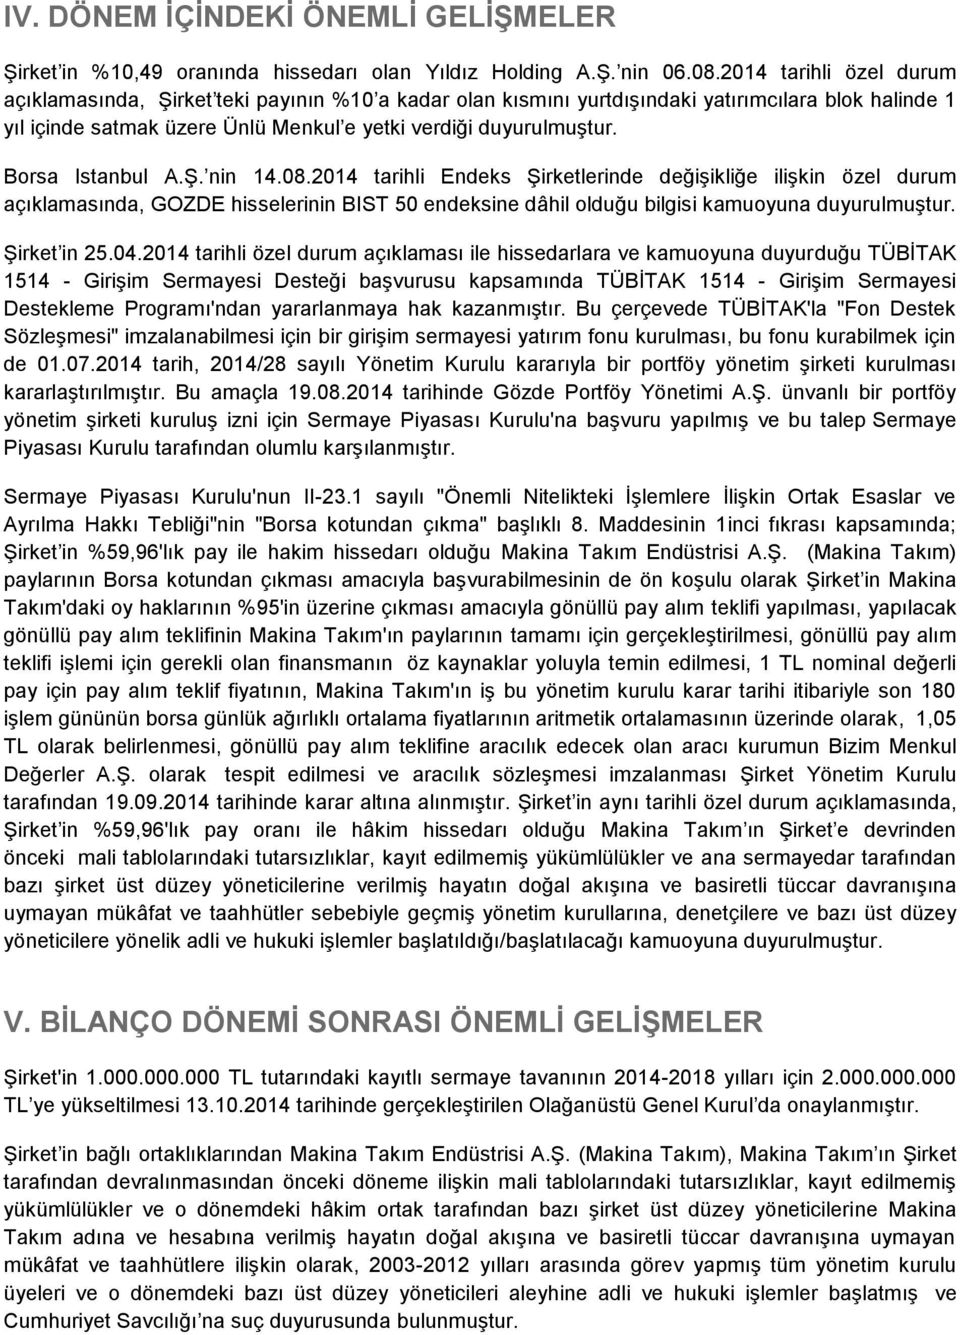 Borsa Istanbul A.Ş. nin 14.08.2014 tarihli Endeks Şirketlerinde değişikliğe ilişkin özel durum açıklamasında, GOZDE hisselerinin BIST 50 endeksine dâhil olduğu bilgisi kamuoyuna duyurulmuştur.